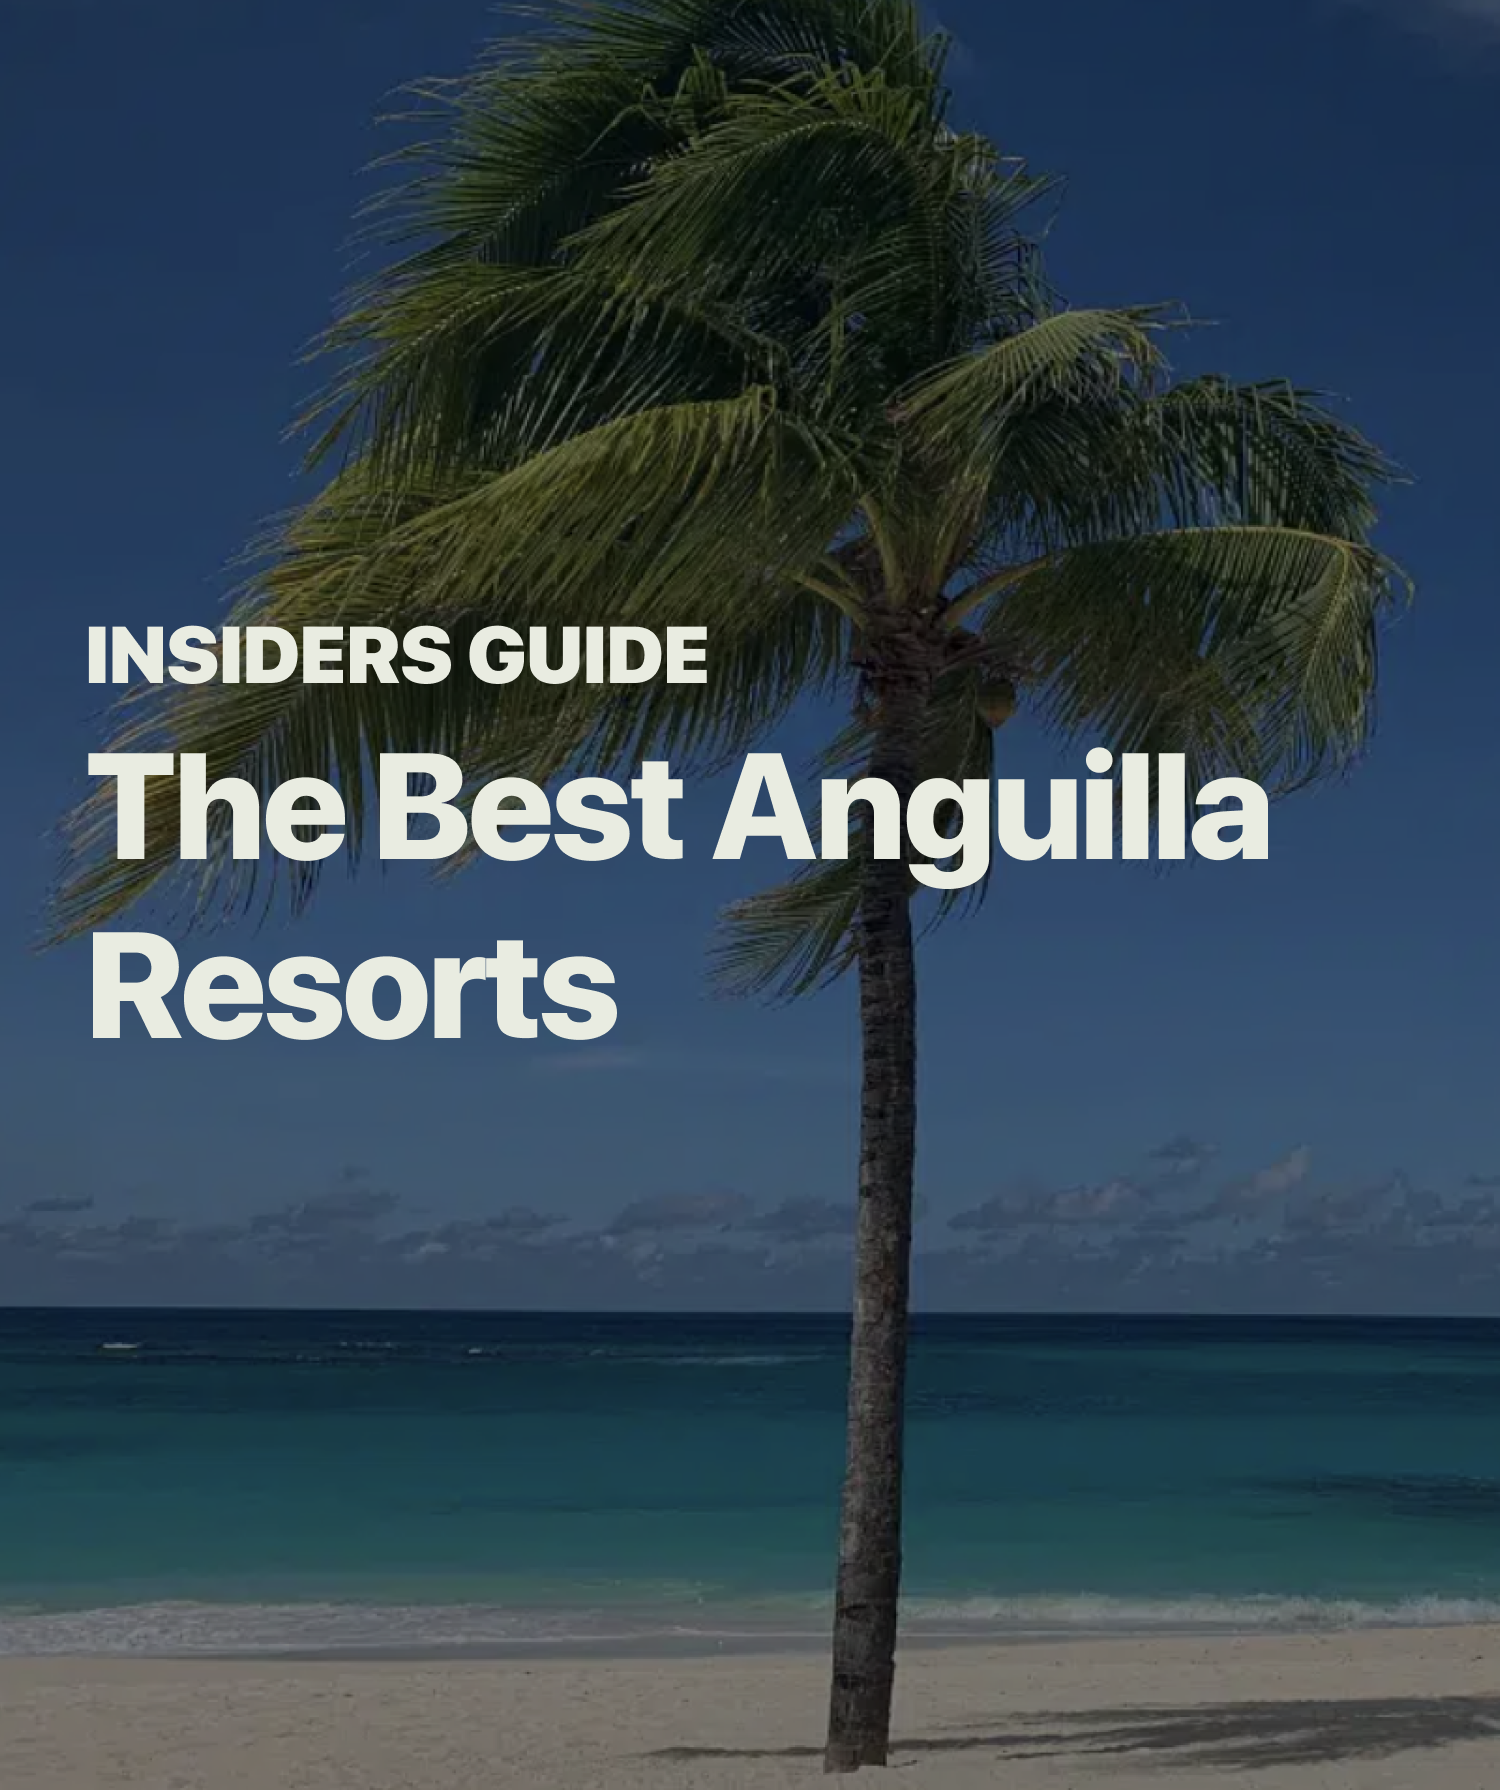 Best Anguilla Resorts